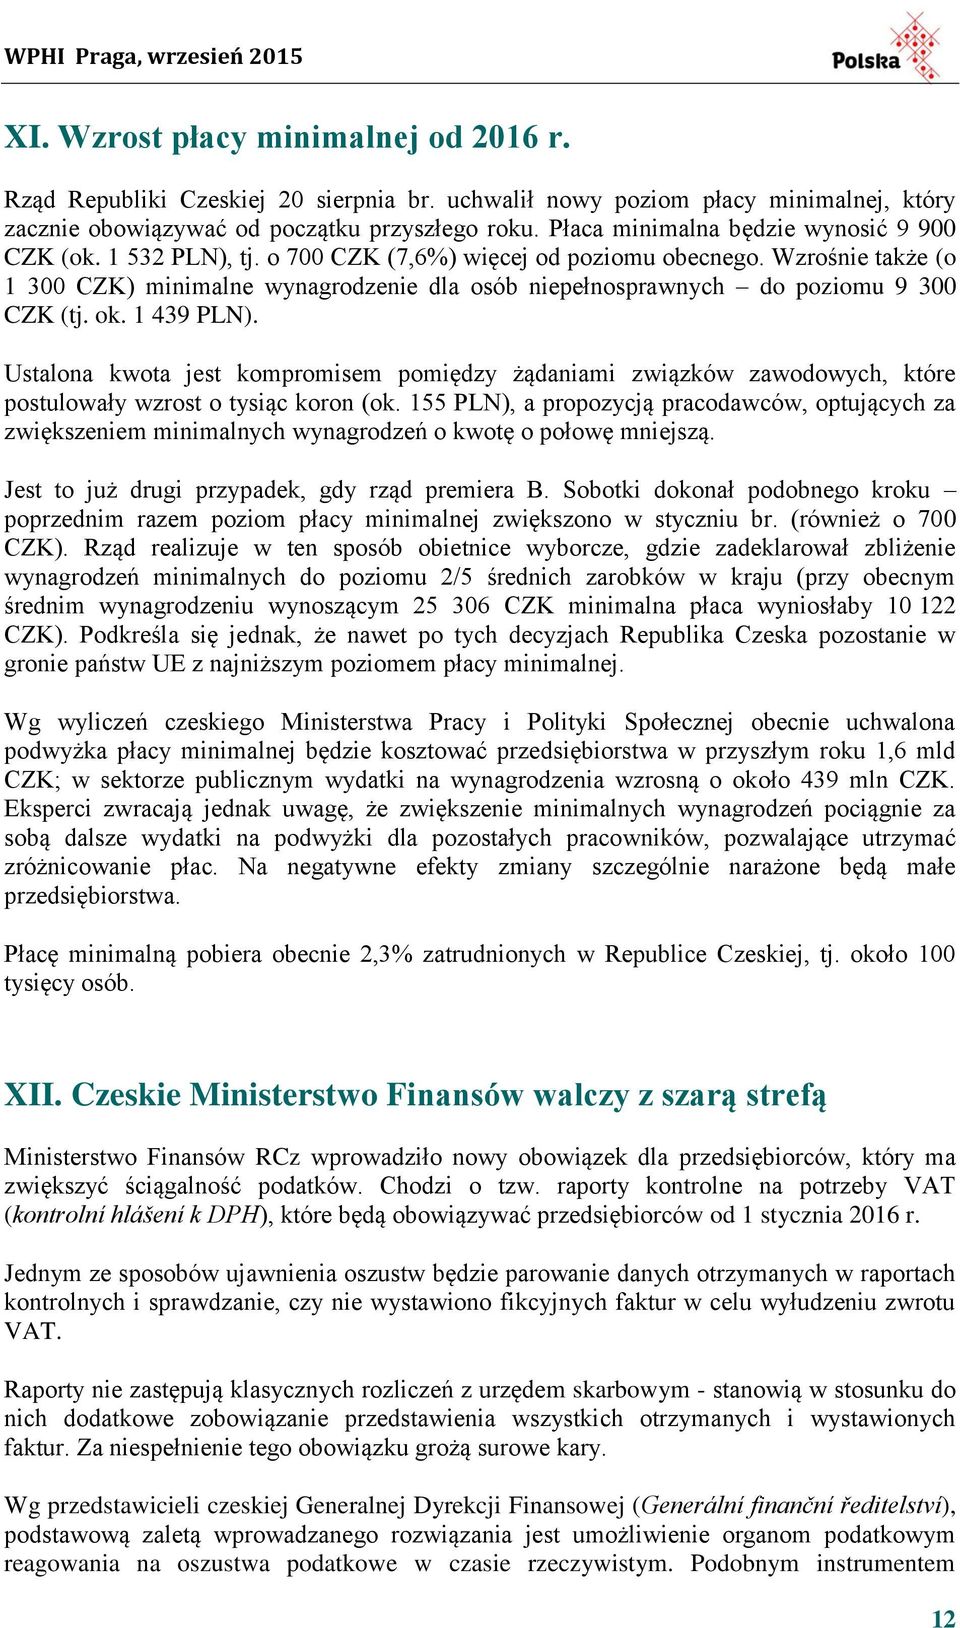 Wzrośnie także (o 1 300 CZK) minimalne wynagrodzenie dla osób niepełnosprawnych do poziomu 9 300 CZK (tj. ok. 1 439 PLN).